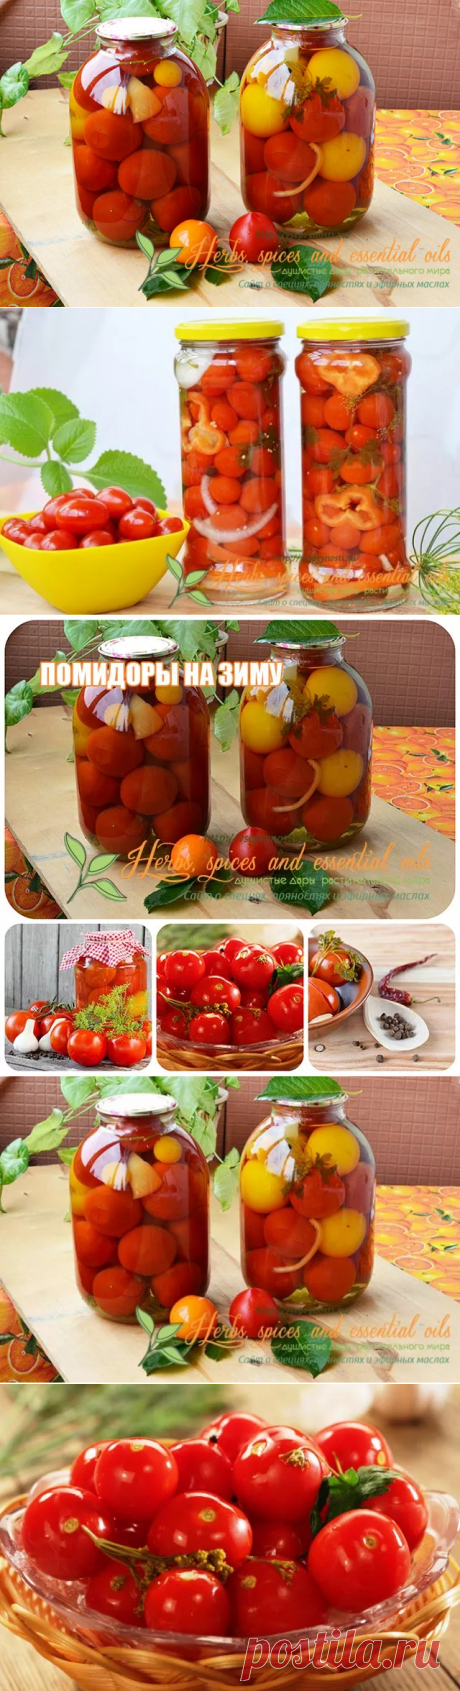 Заготовки из помидоров на зиму - вкусные рецепты с фото и видео